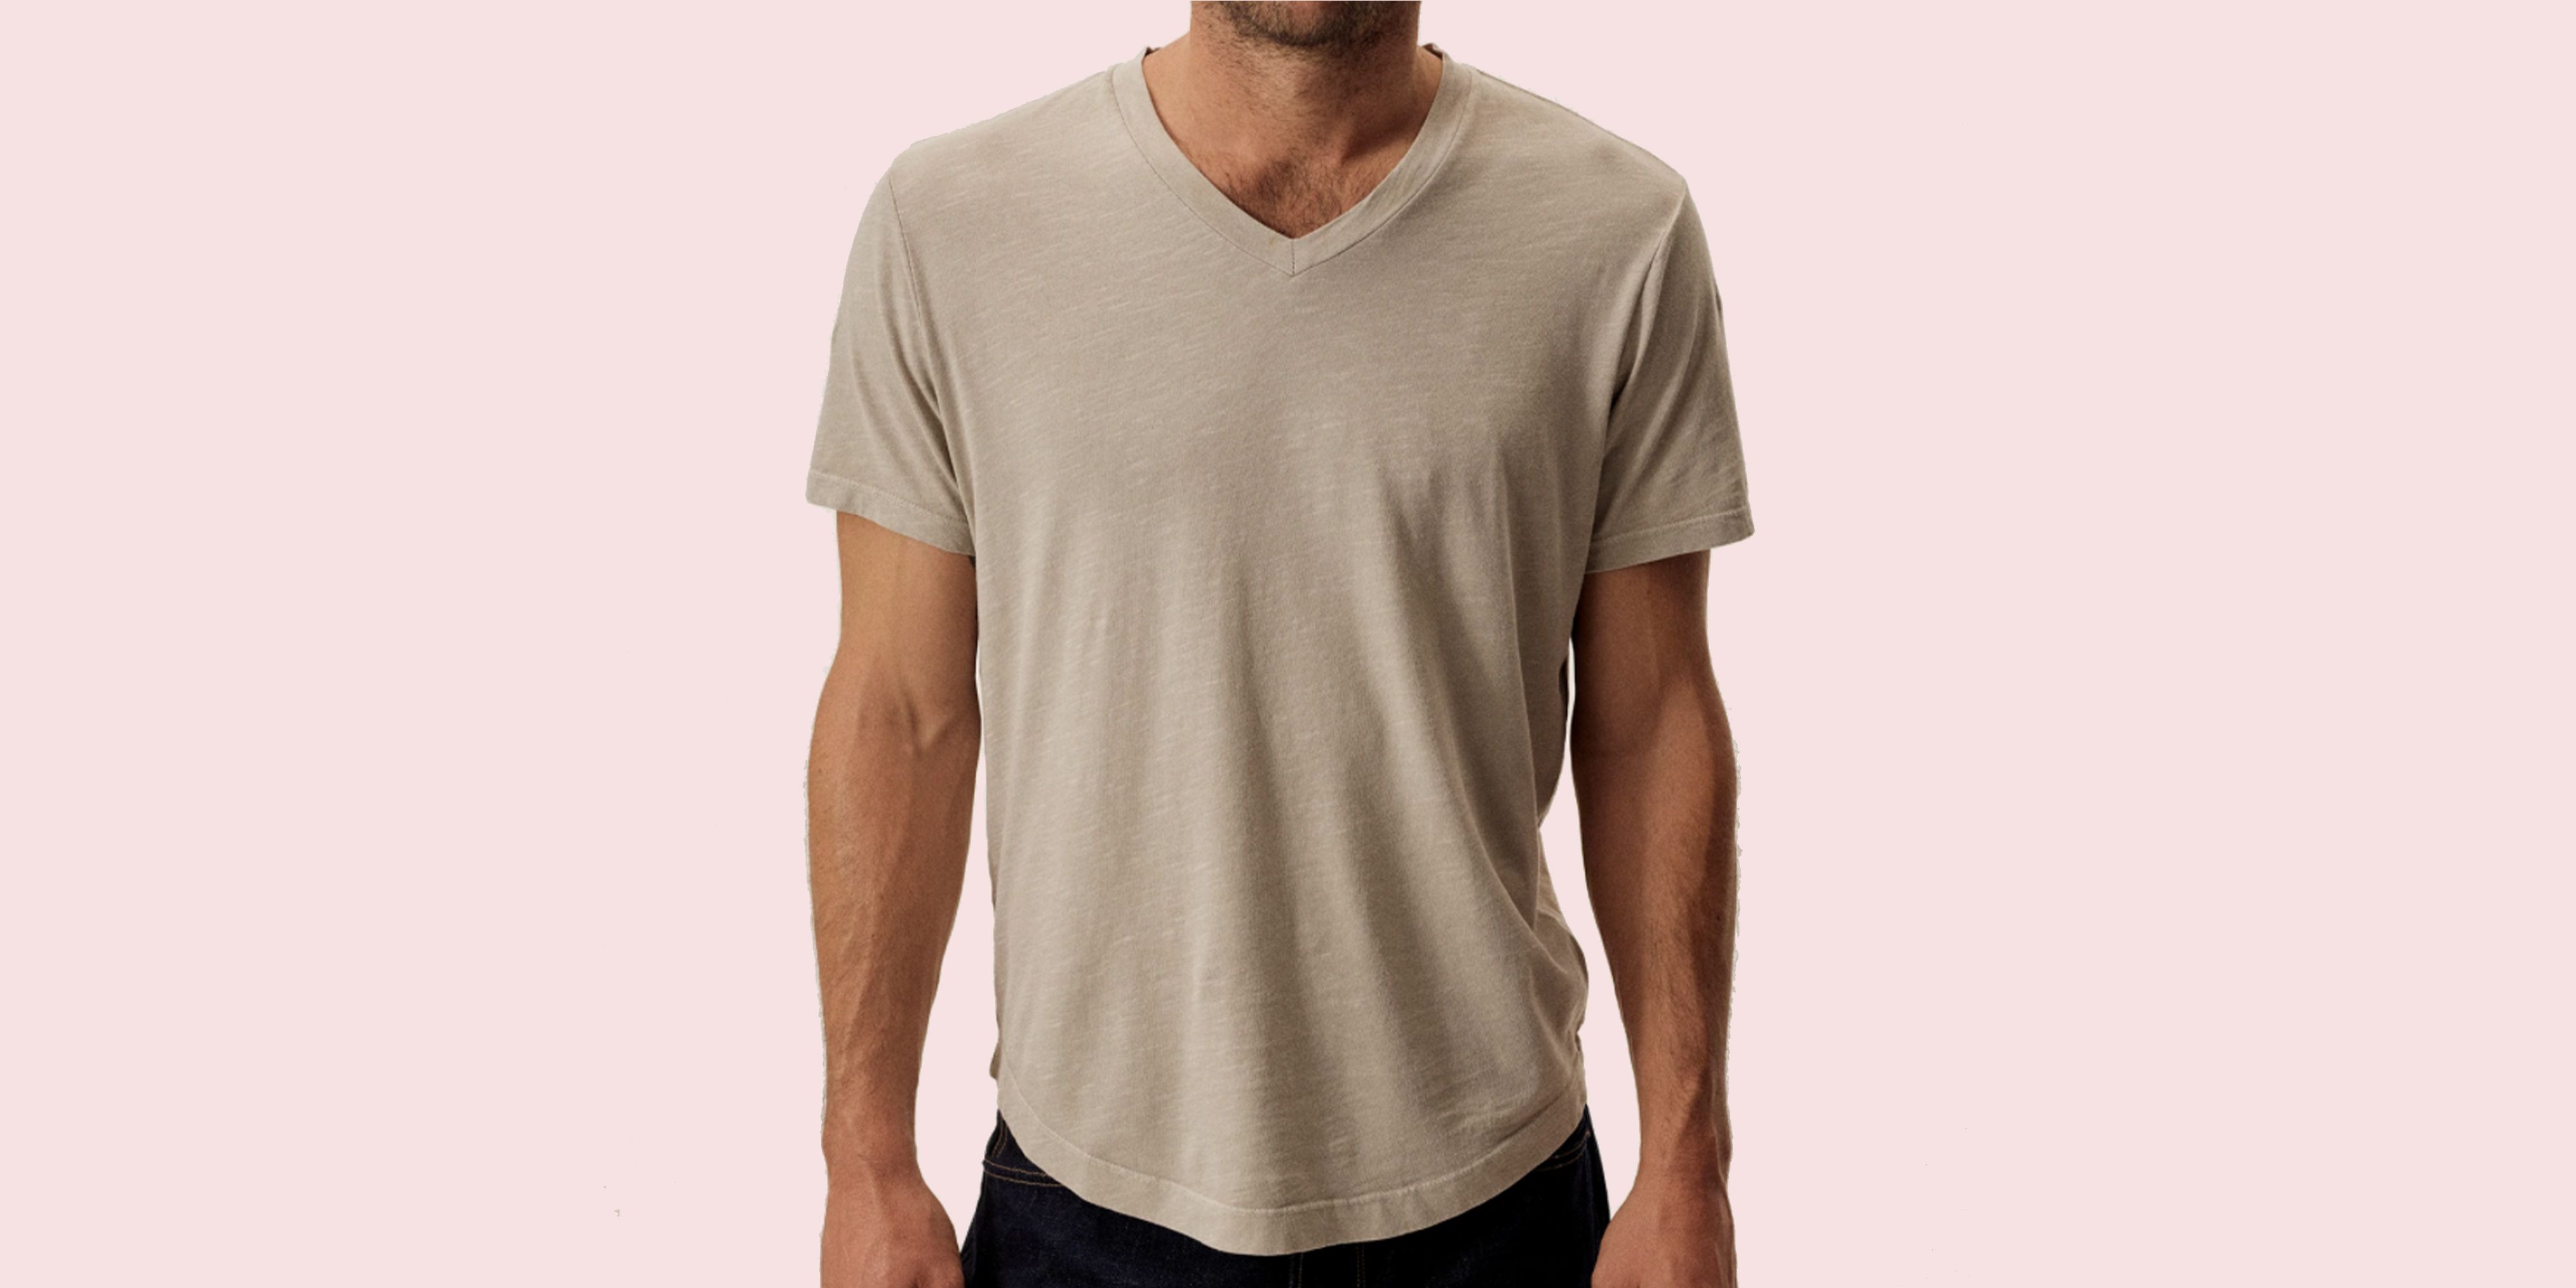 35 Best V-Neck T-Shirts for Men